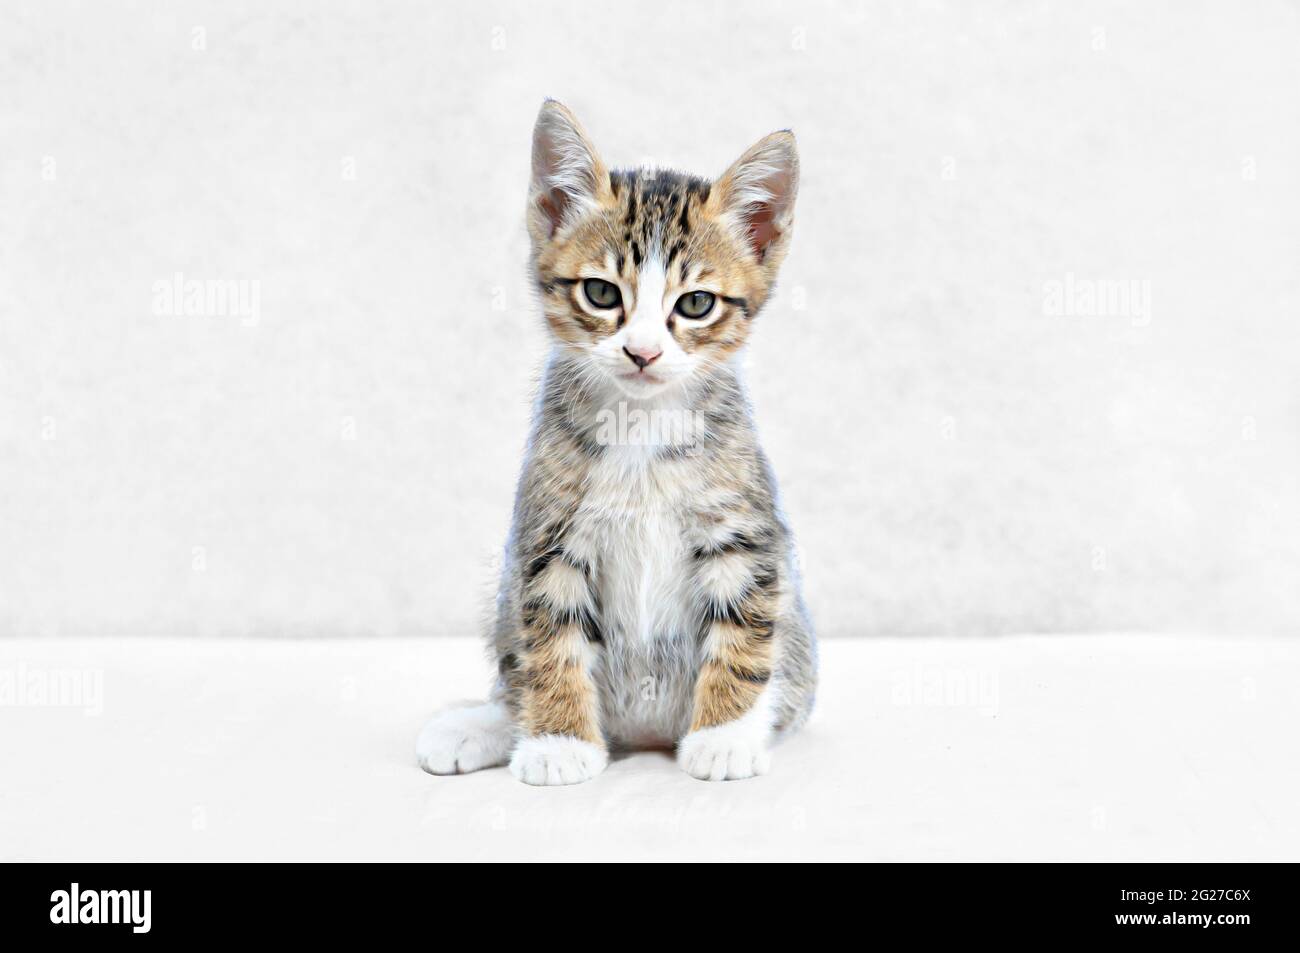 Adorable kitten on white background Stock Photo